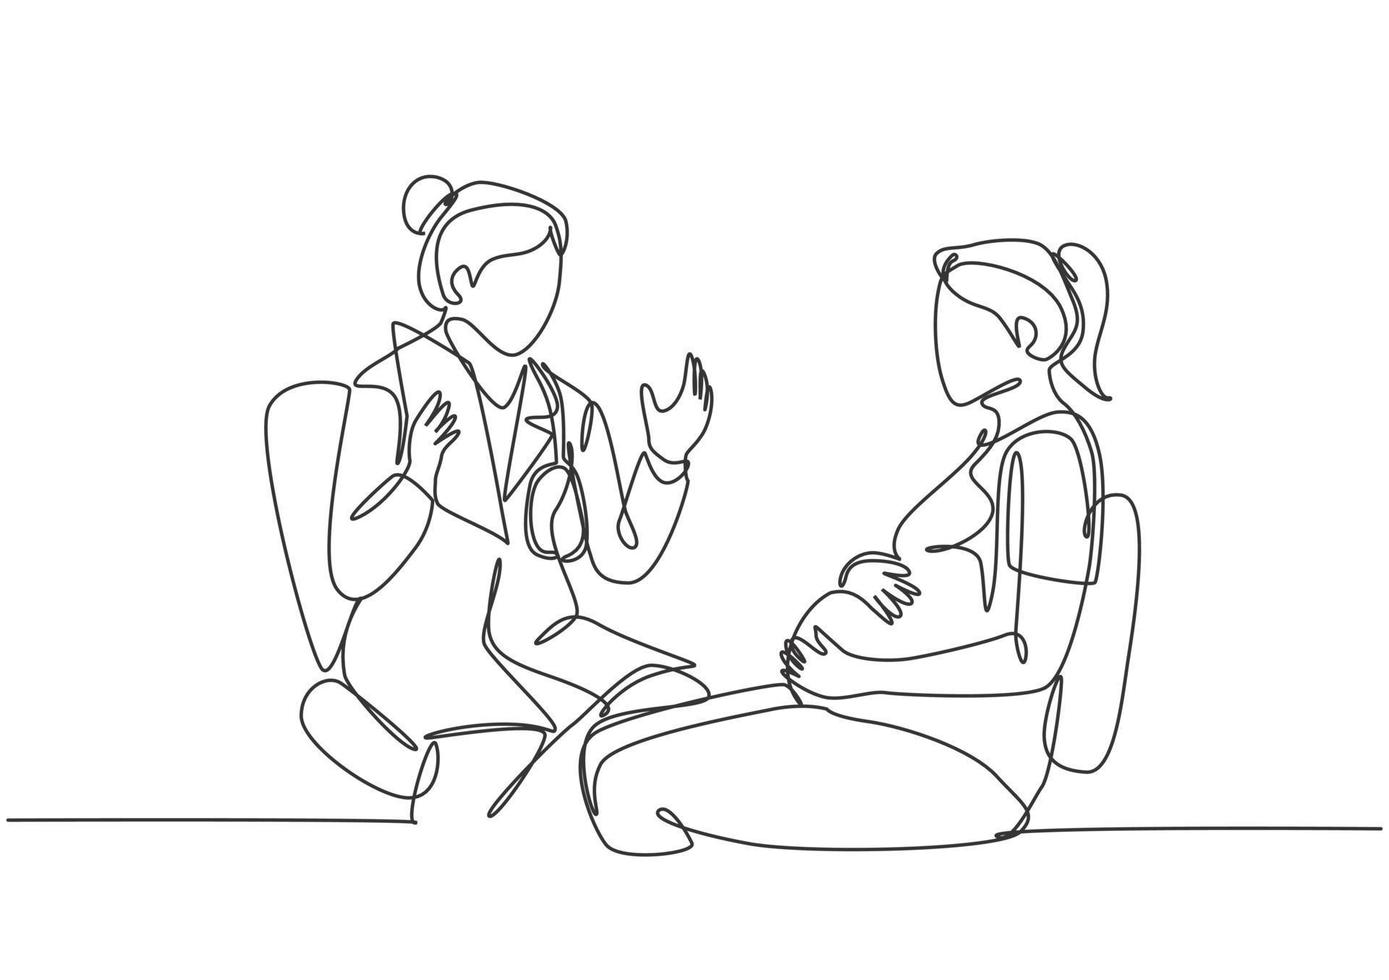 un unico disegno a tratteggio di ostetricia e ginecologia femminile che dà sessione di consultazione alla paziente incinta. concetto di assistenza sanitaria in gravidanza linea continua disegnare disegno vettoriale illustrazione